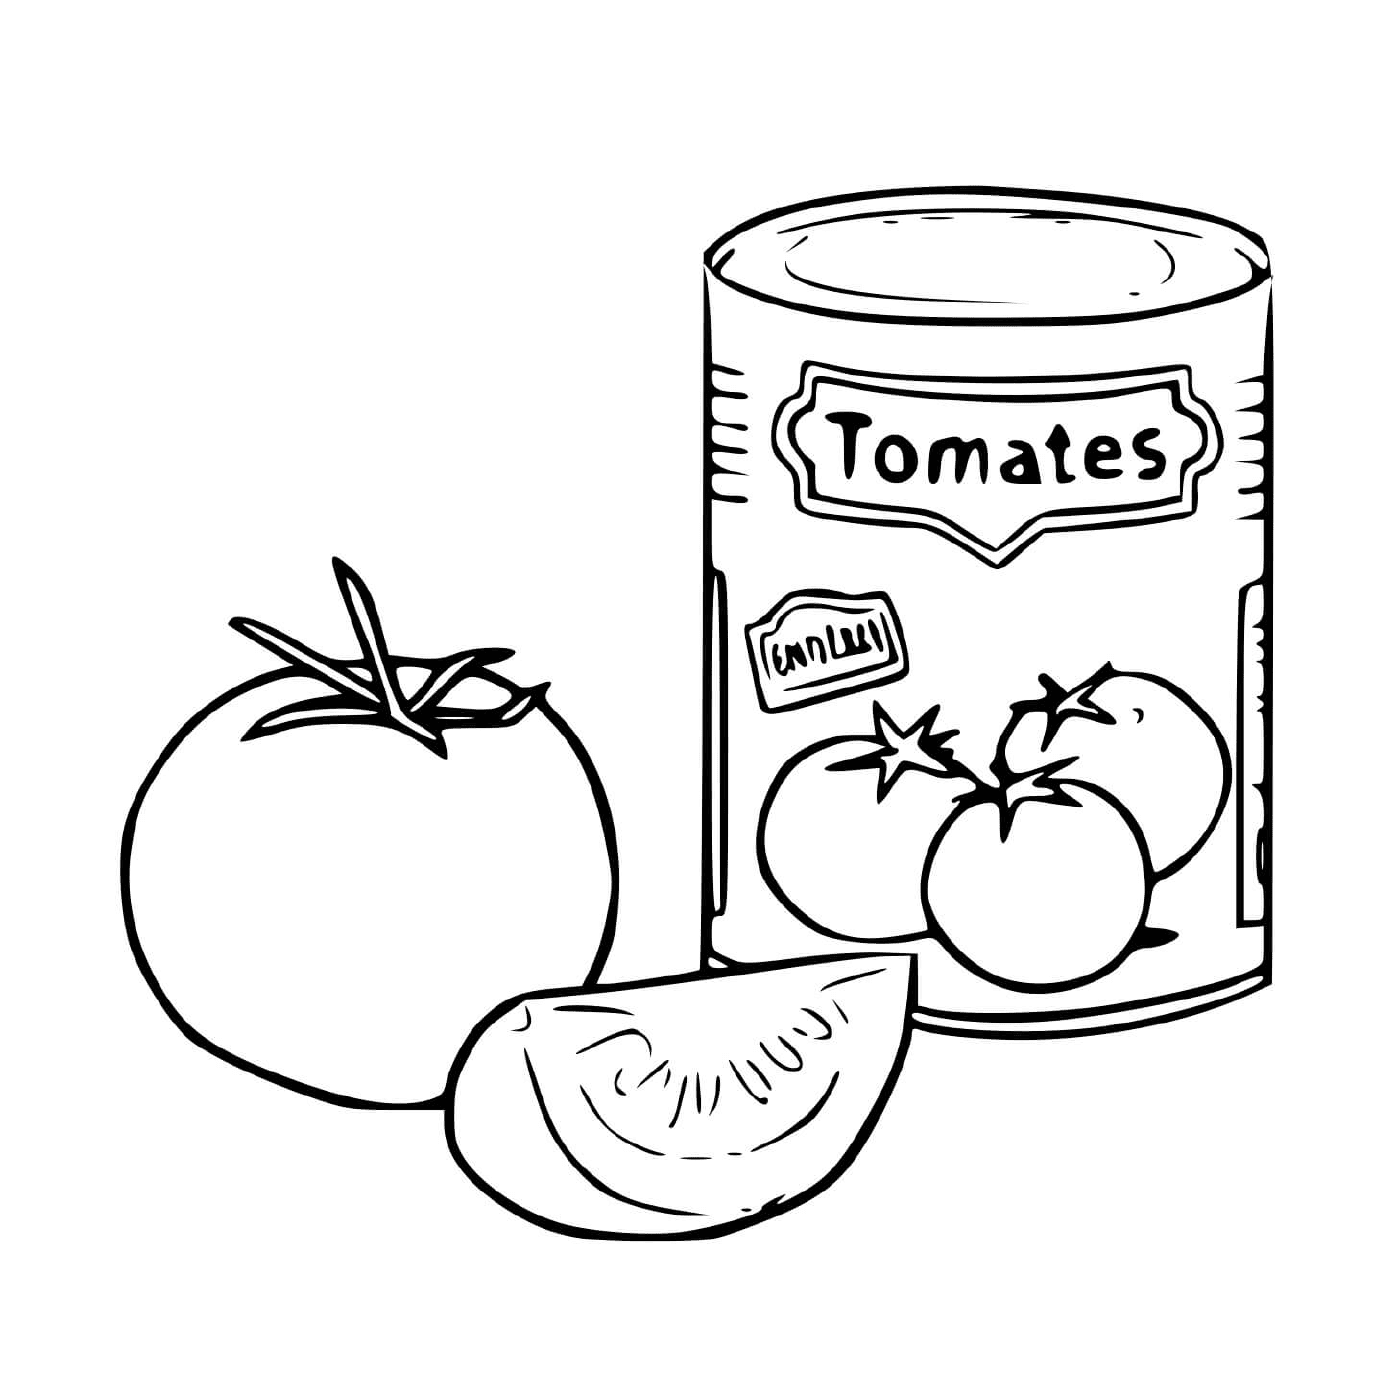  Caña de tomate triturada 